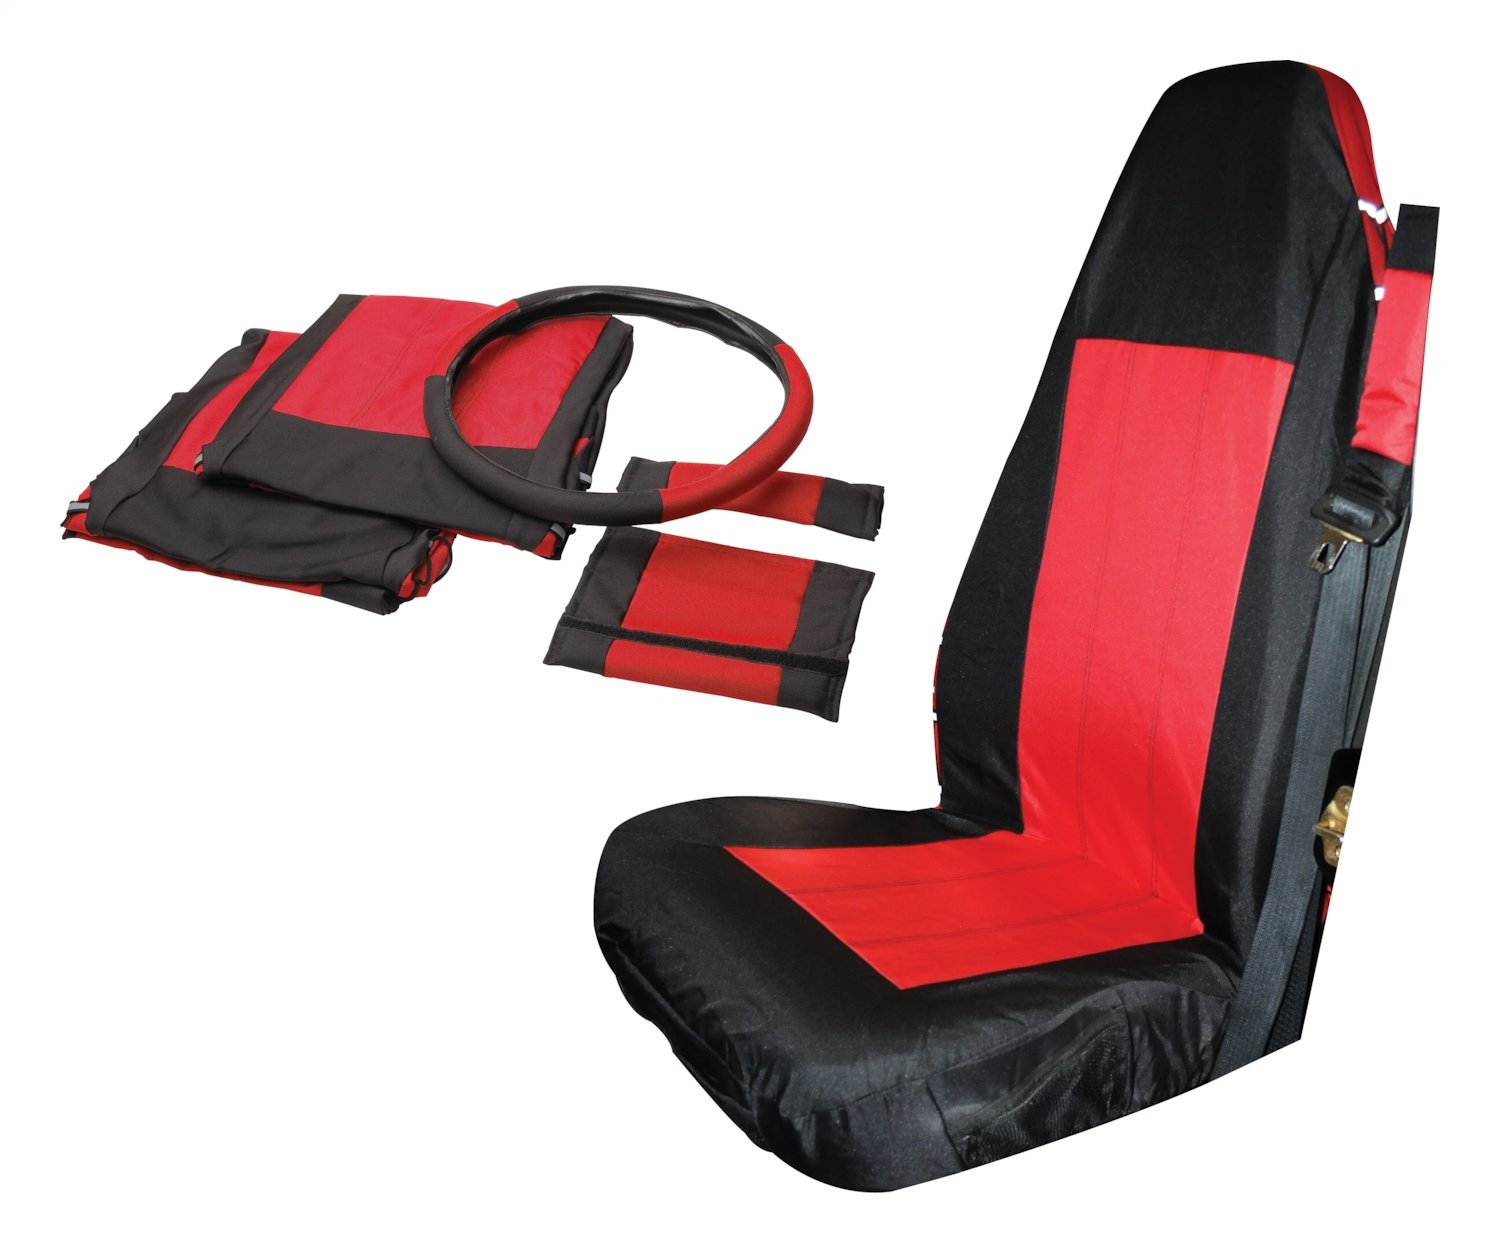 WeatherTech SBP003CO Seat Back Protectors